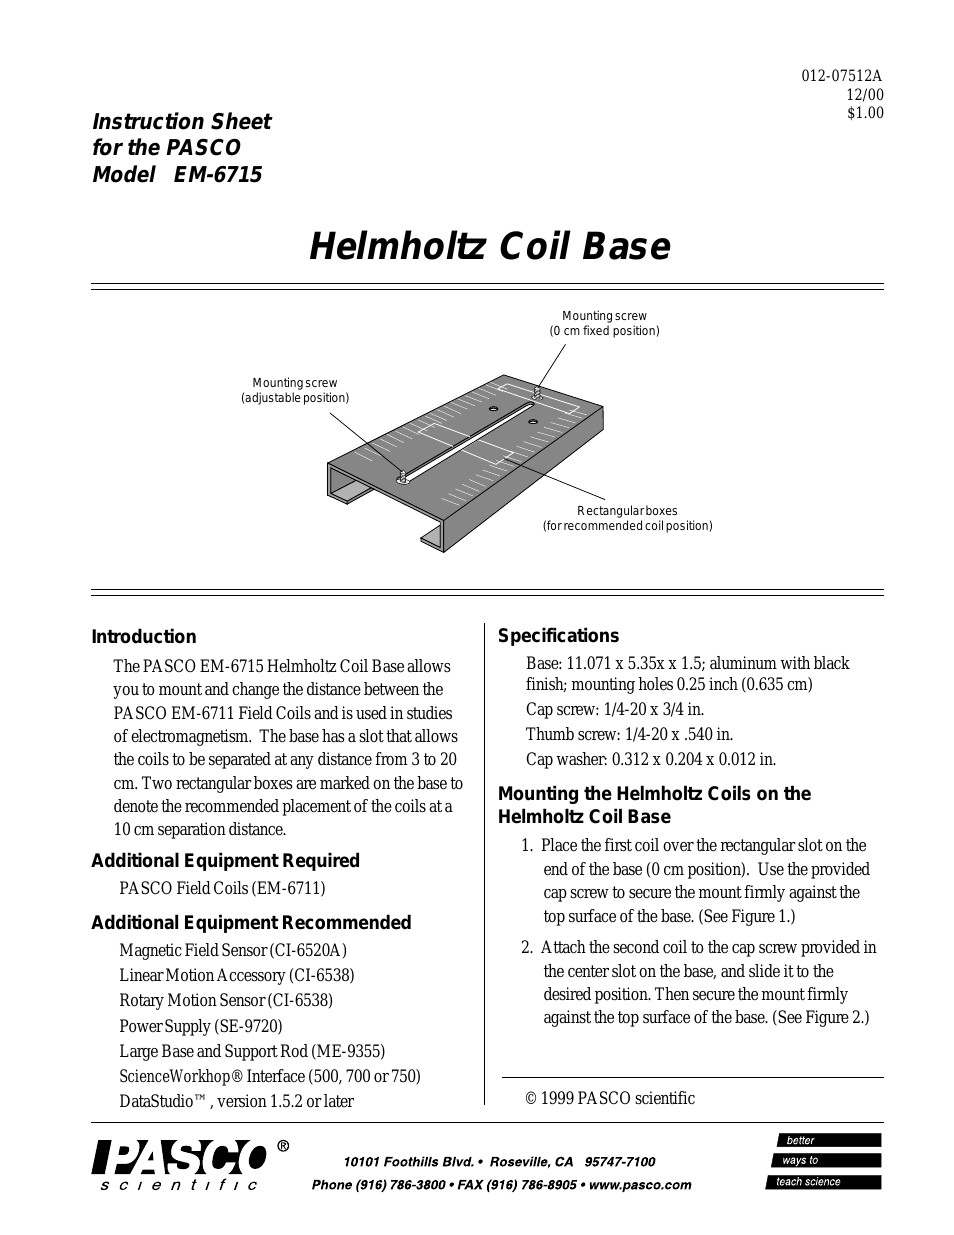 EM-6715 Helmholtz Coil Base